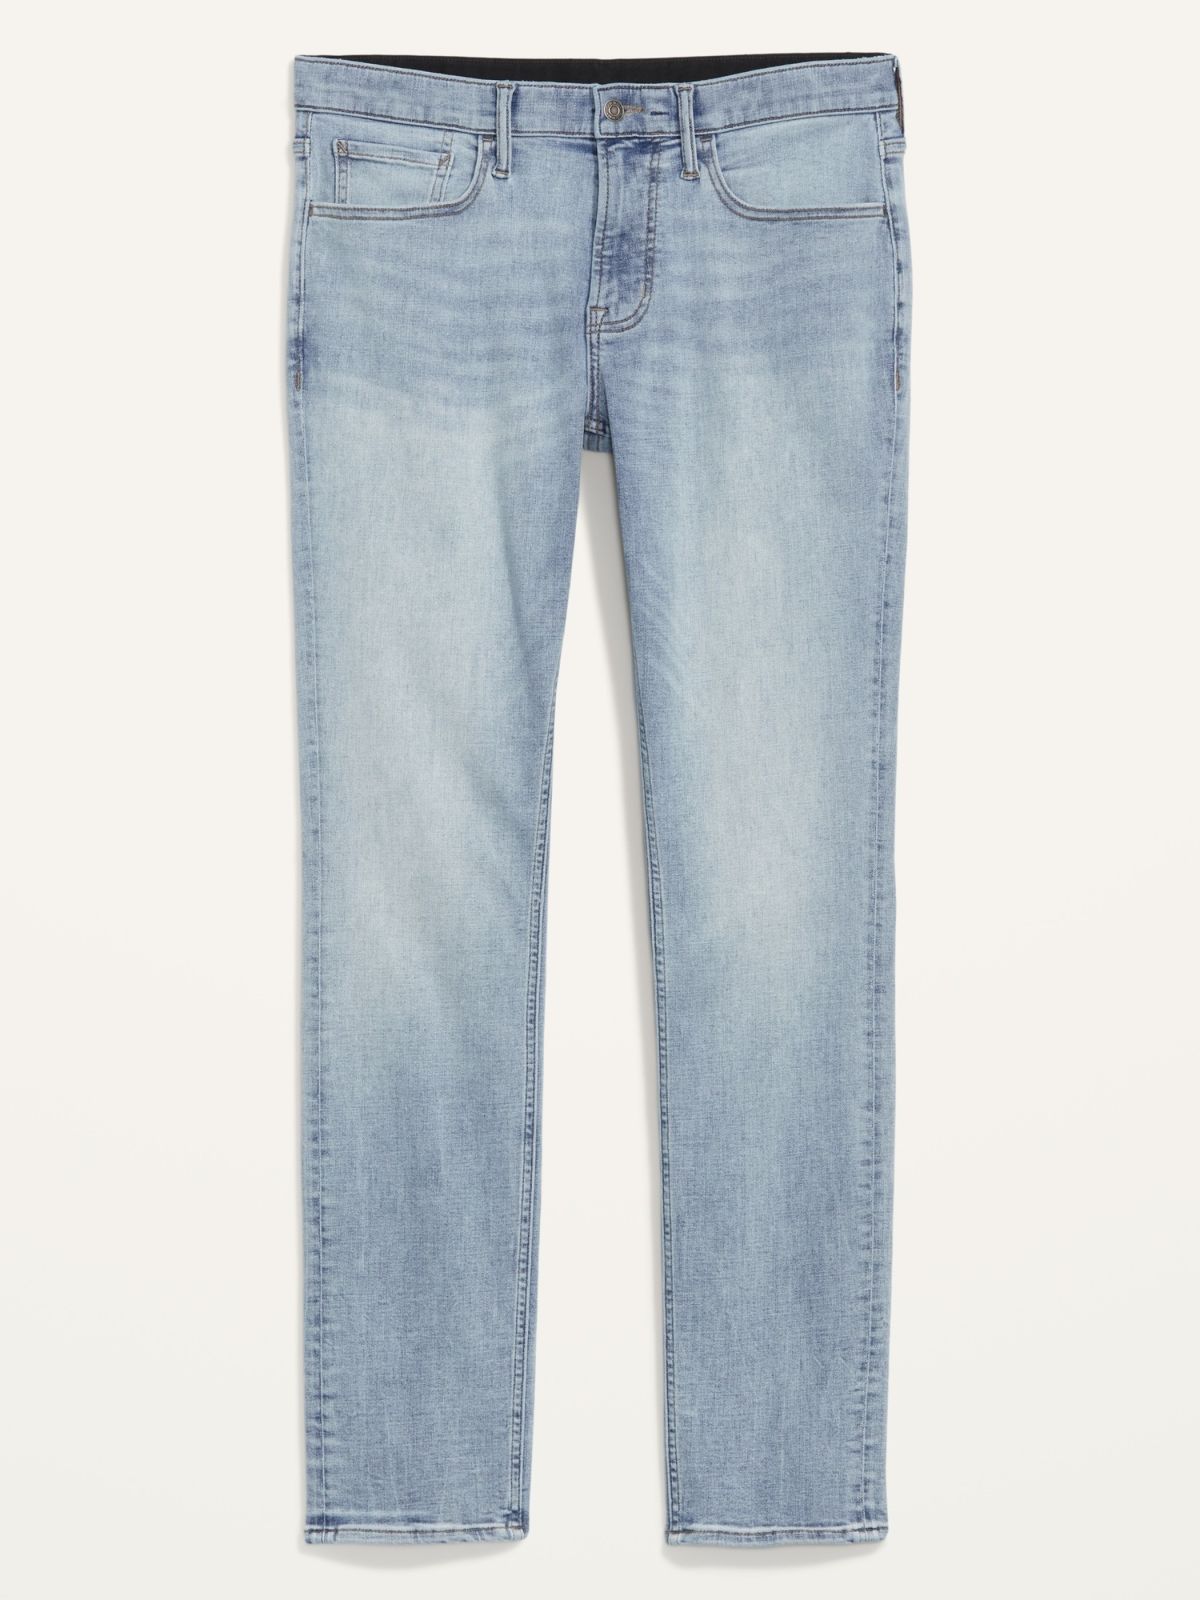  ג'ינס ארוך בגזרת Slim של OLD NAVY